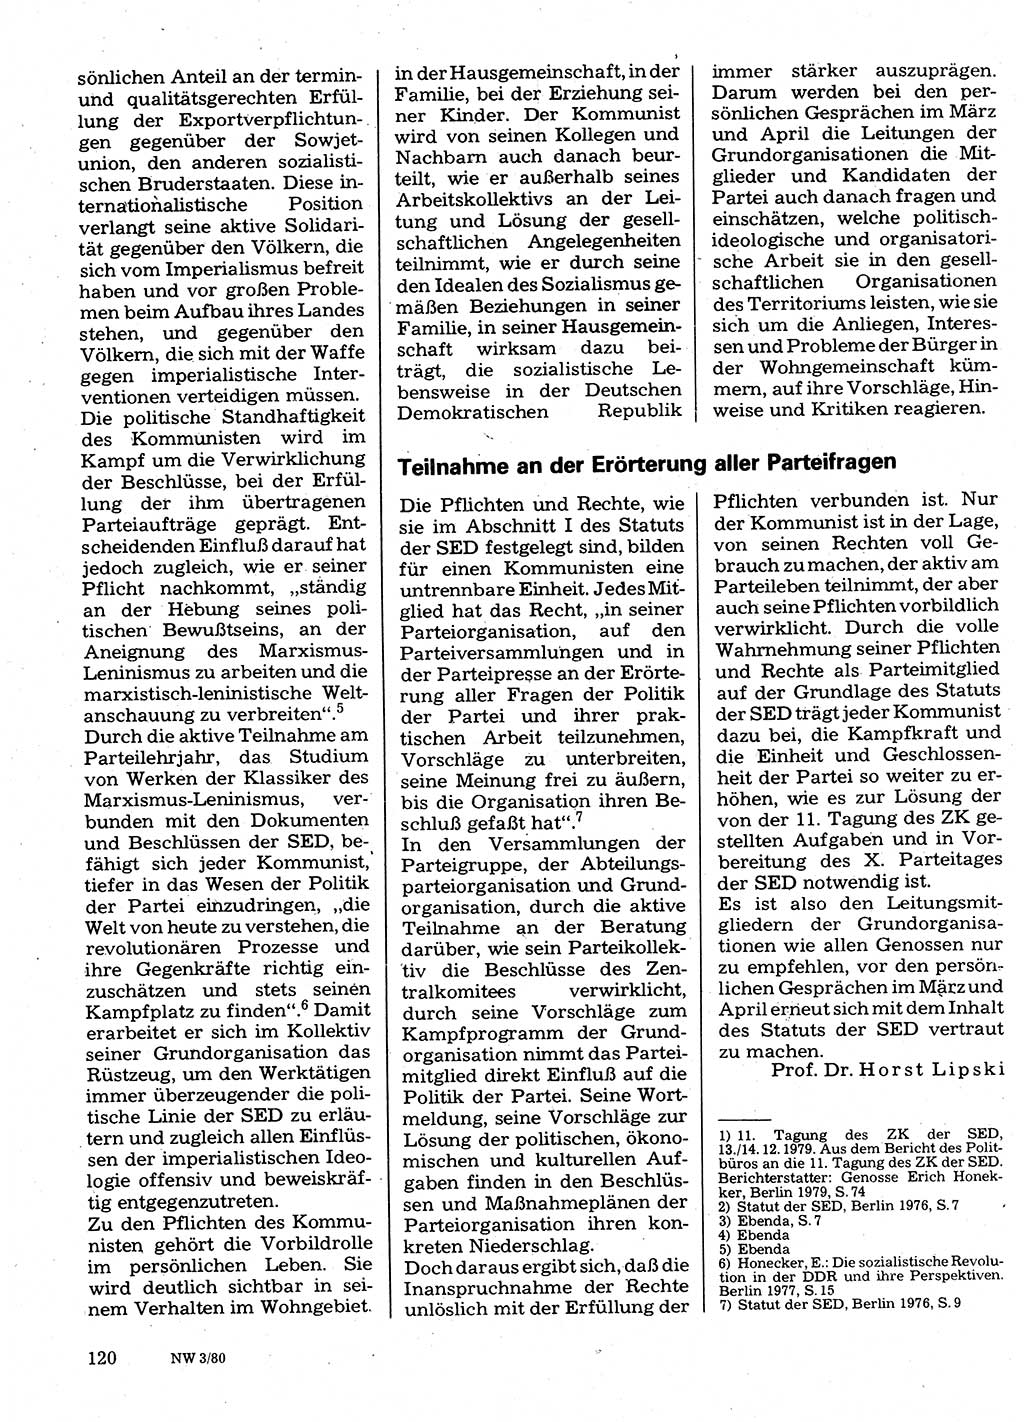 Neuer Weg (NW), Organ des Zentralkomitees (ZK) der SED (Sozialistische Einheitspartei Deutschlands) für Fragen des Parteilebens, 35. Jahrgang [Deutsche Demokratische Republik (DDR)] 1980, Seite 120 (NW ZK SED DDR 1980, S. 120)